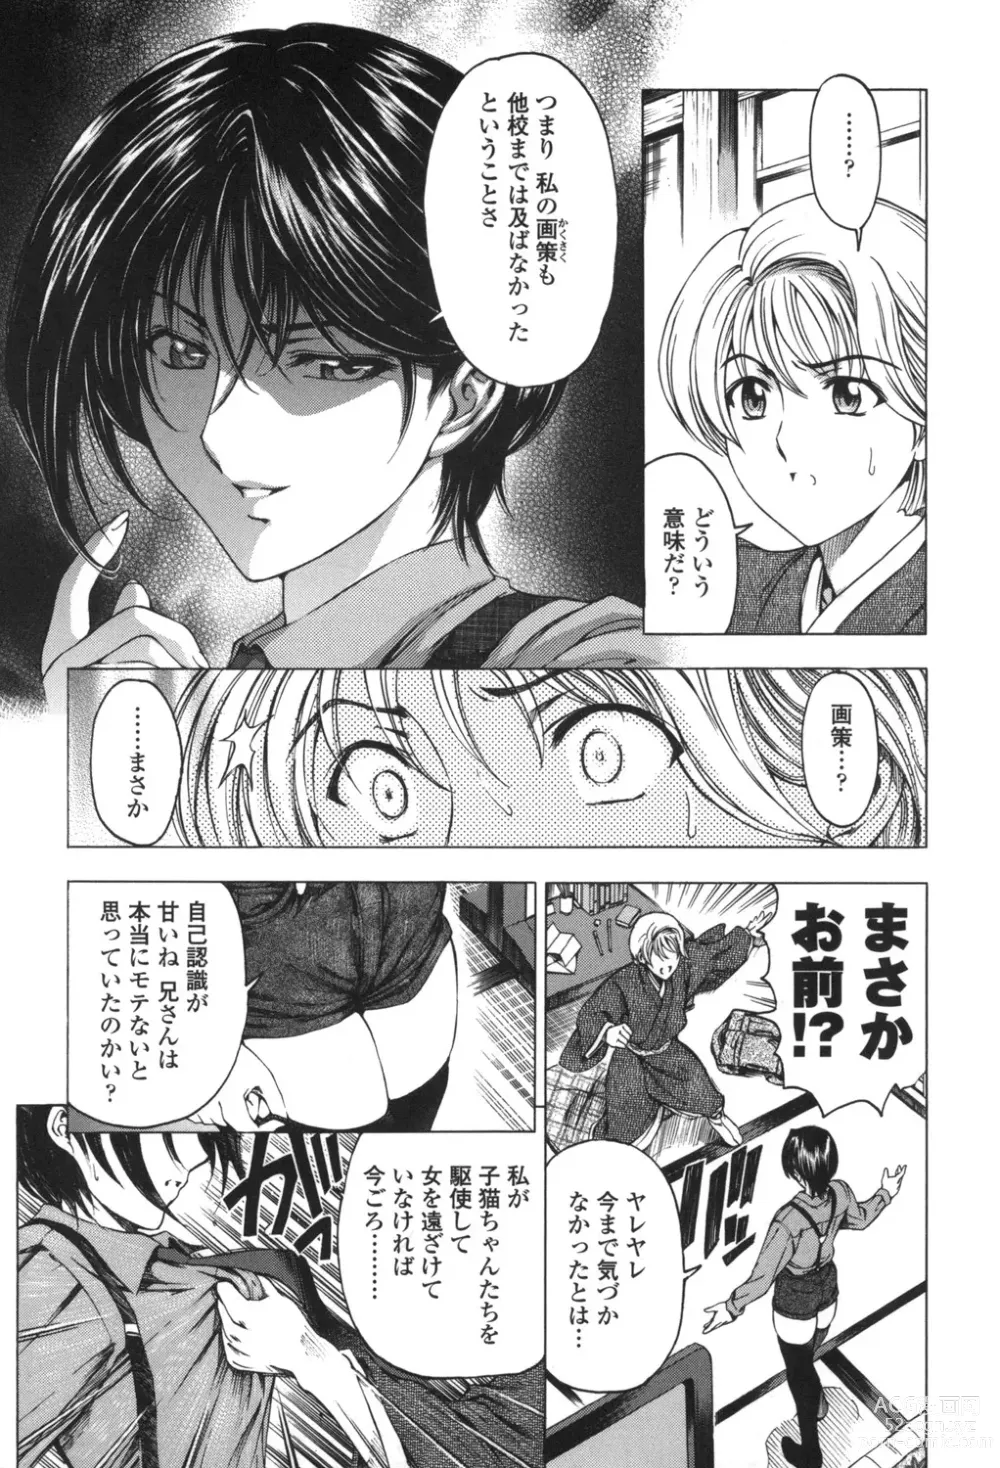 Page 14 of manga Maruimo!?